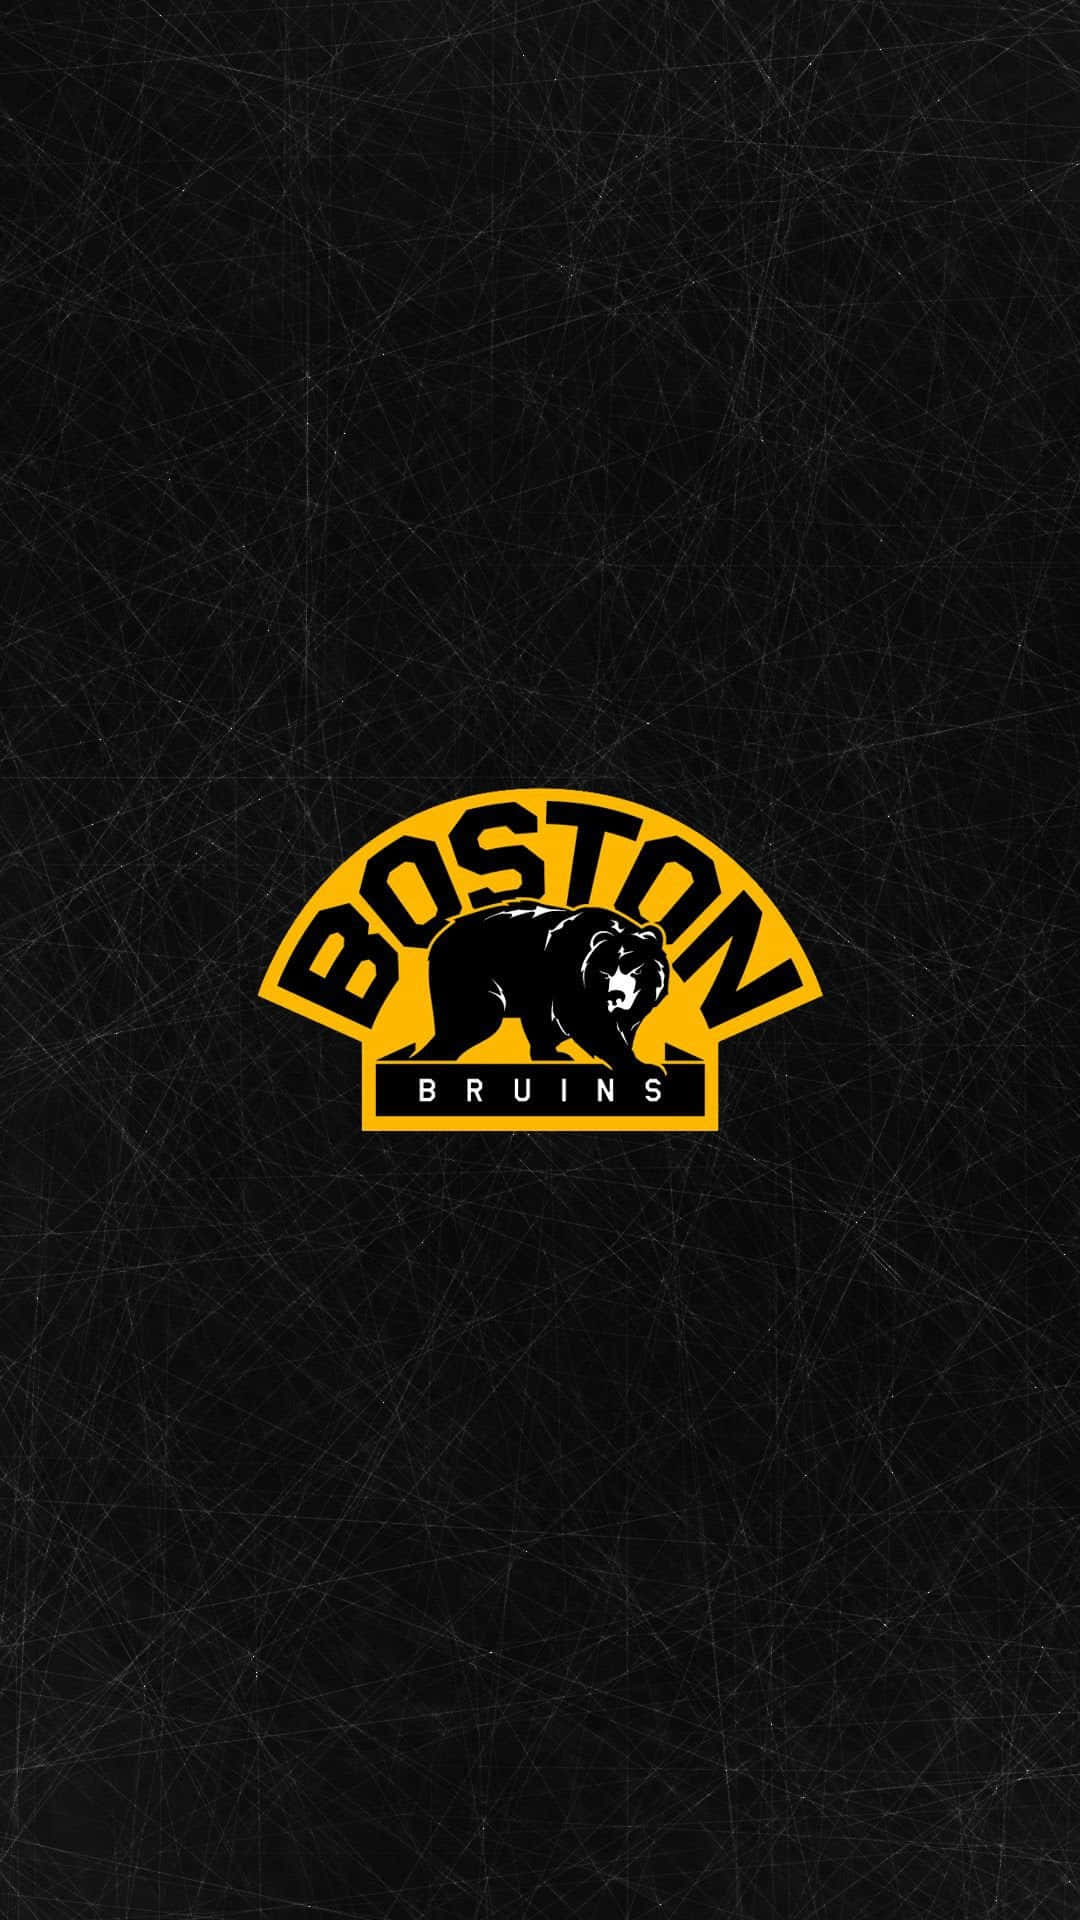 Bostonbruins-logo På En Sort Baggrund.